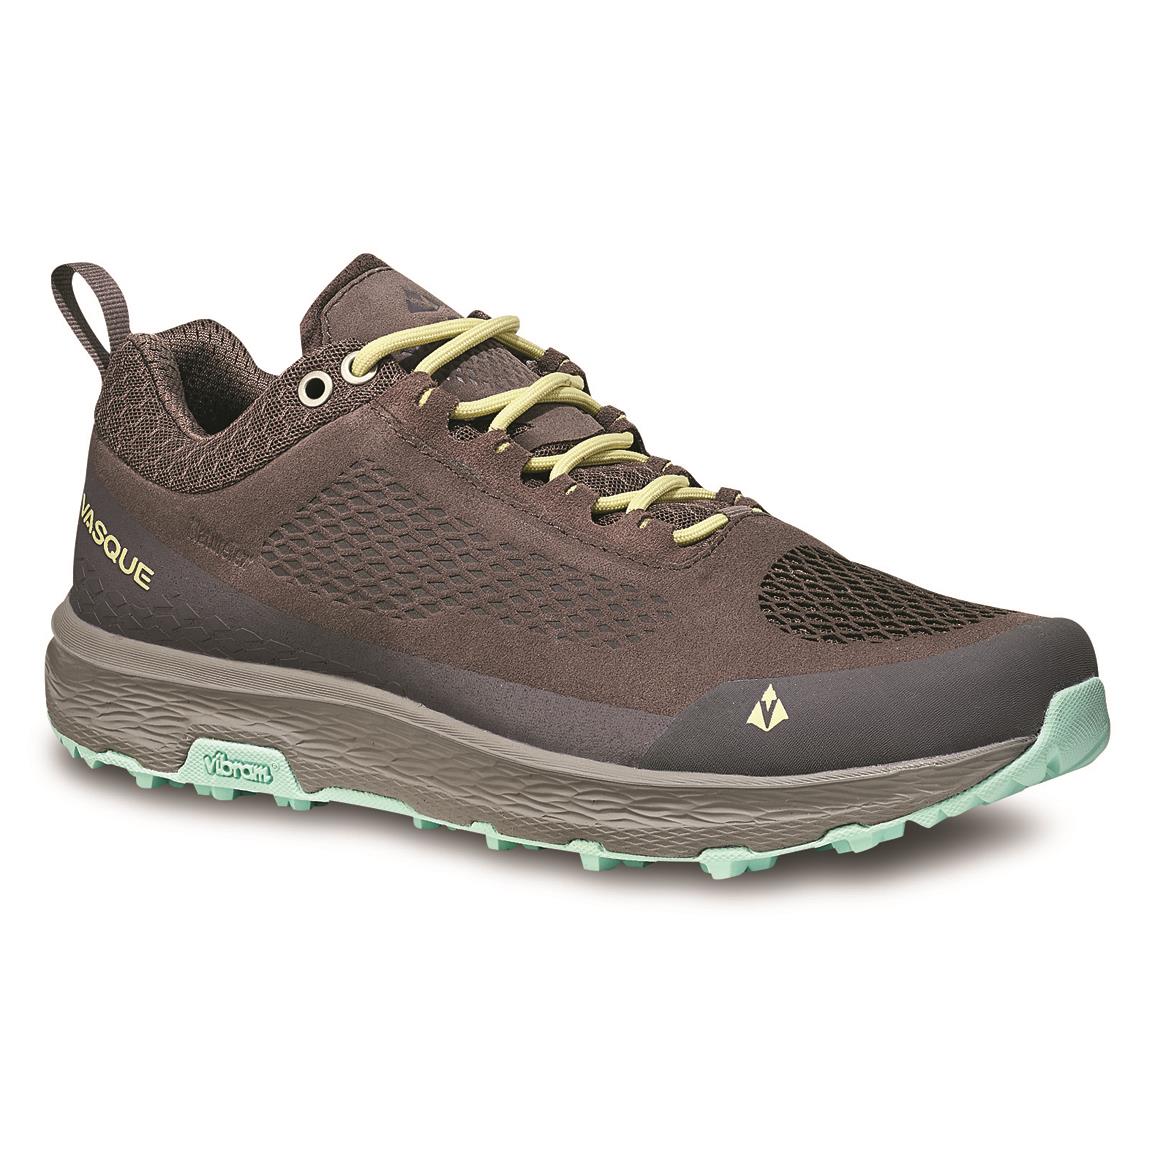 Vasque Women's Breeze LT ECO Waterproof Hiking Shoes, Sparrow